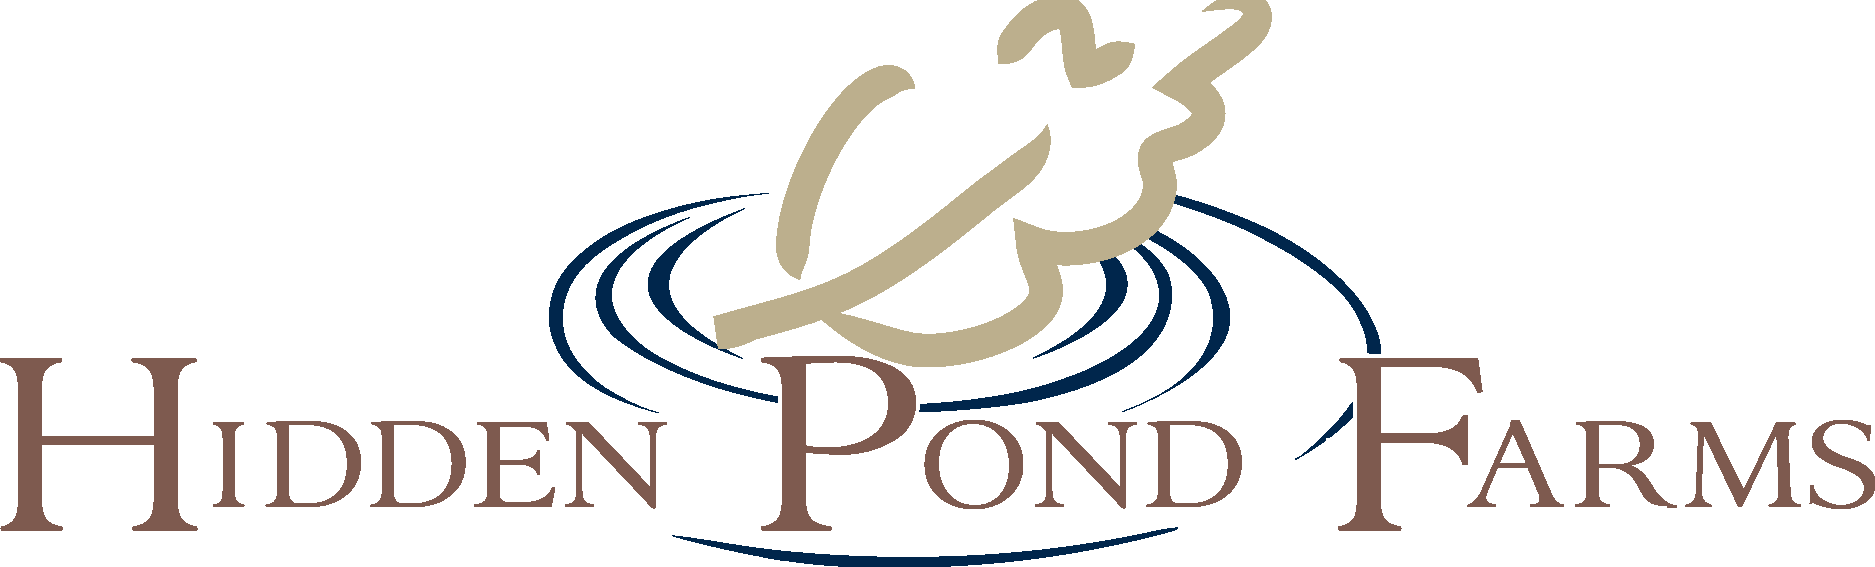 Hidden Pond Farms Logo Vector